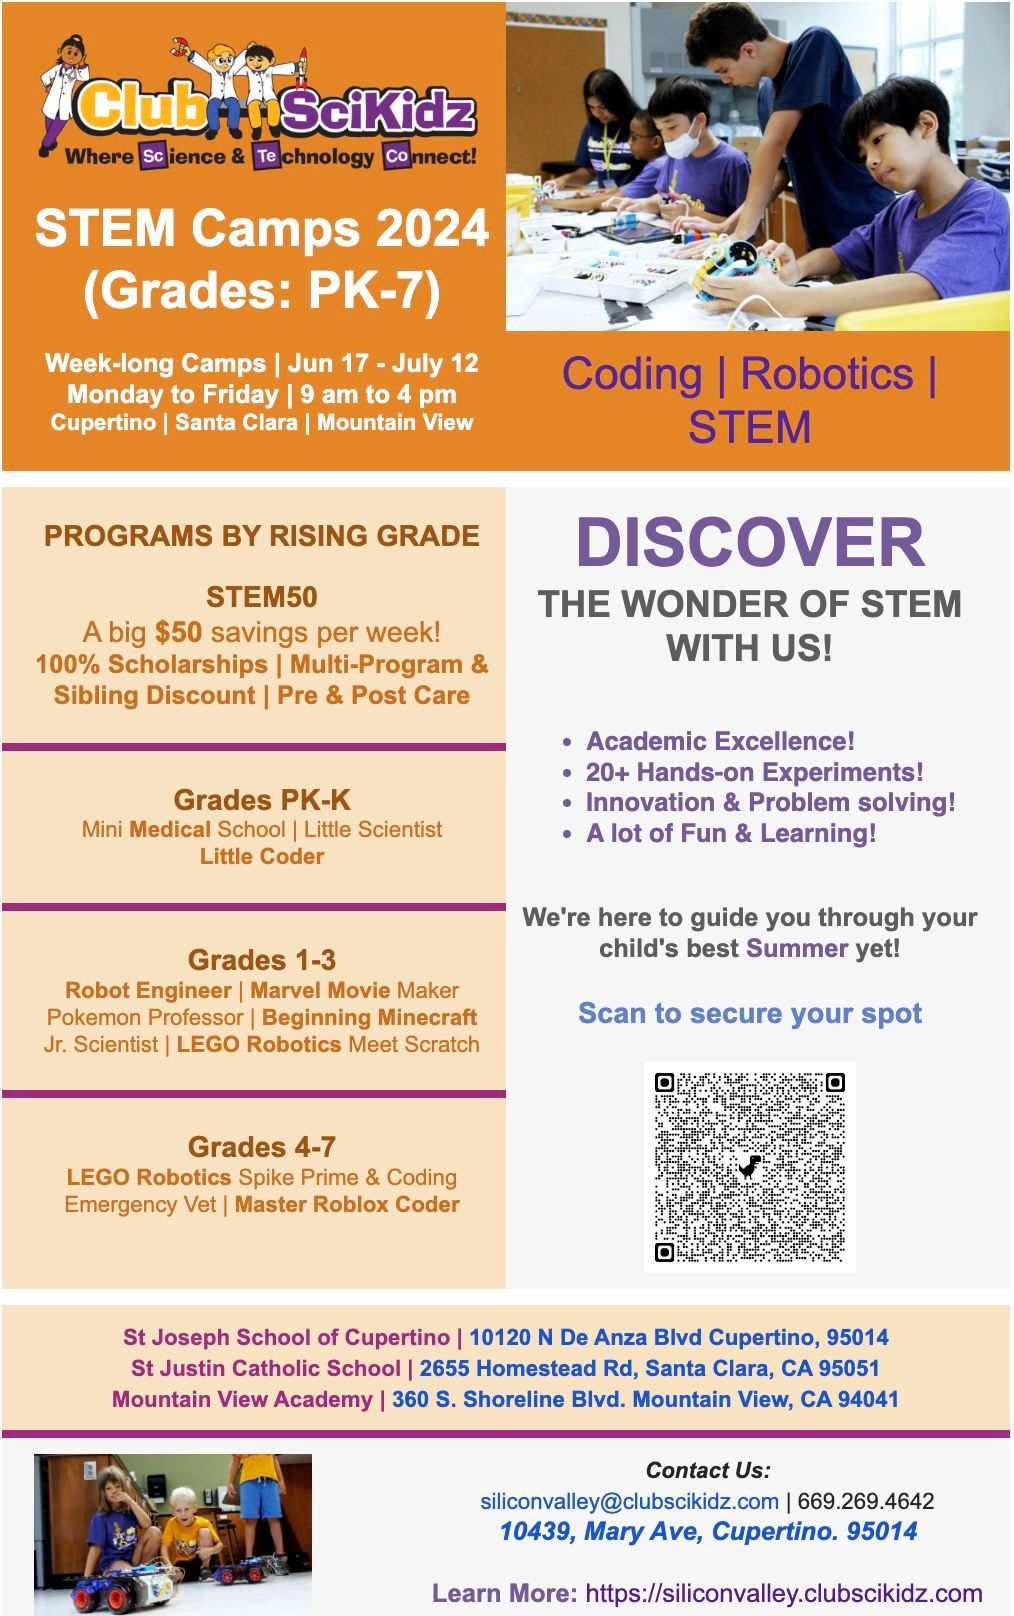 STEM | Coding | Robotics Camps | Grades PK-7 | Memorial Day Special $50 savings with code STEM50